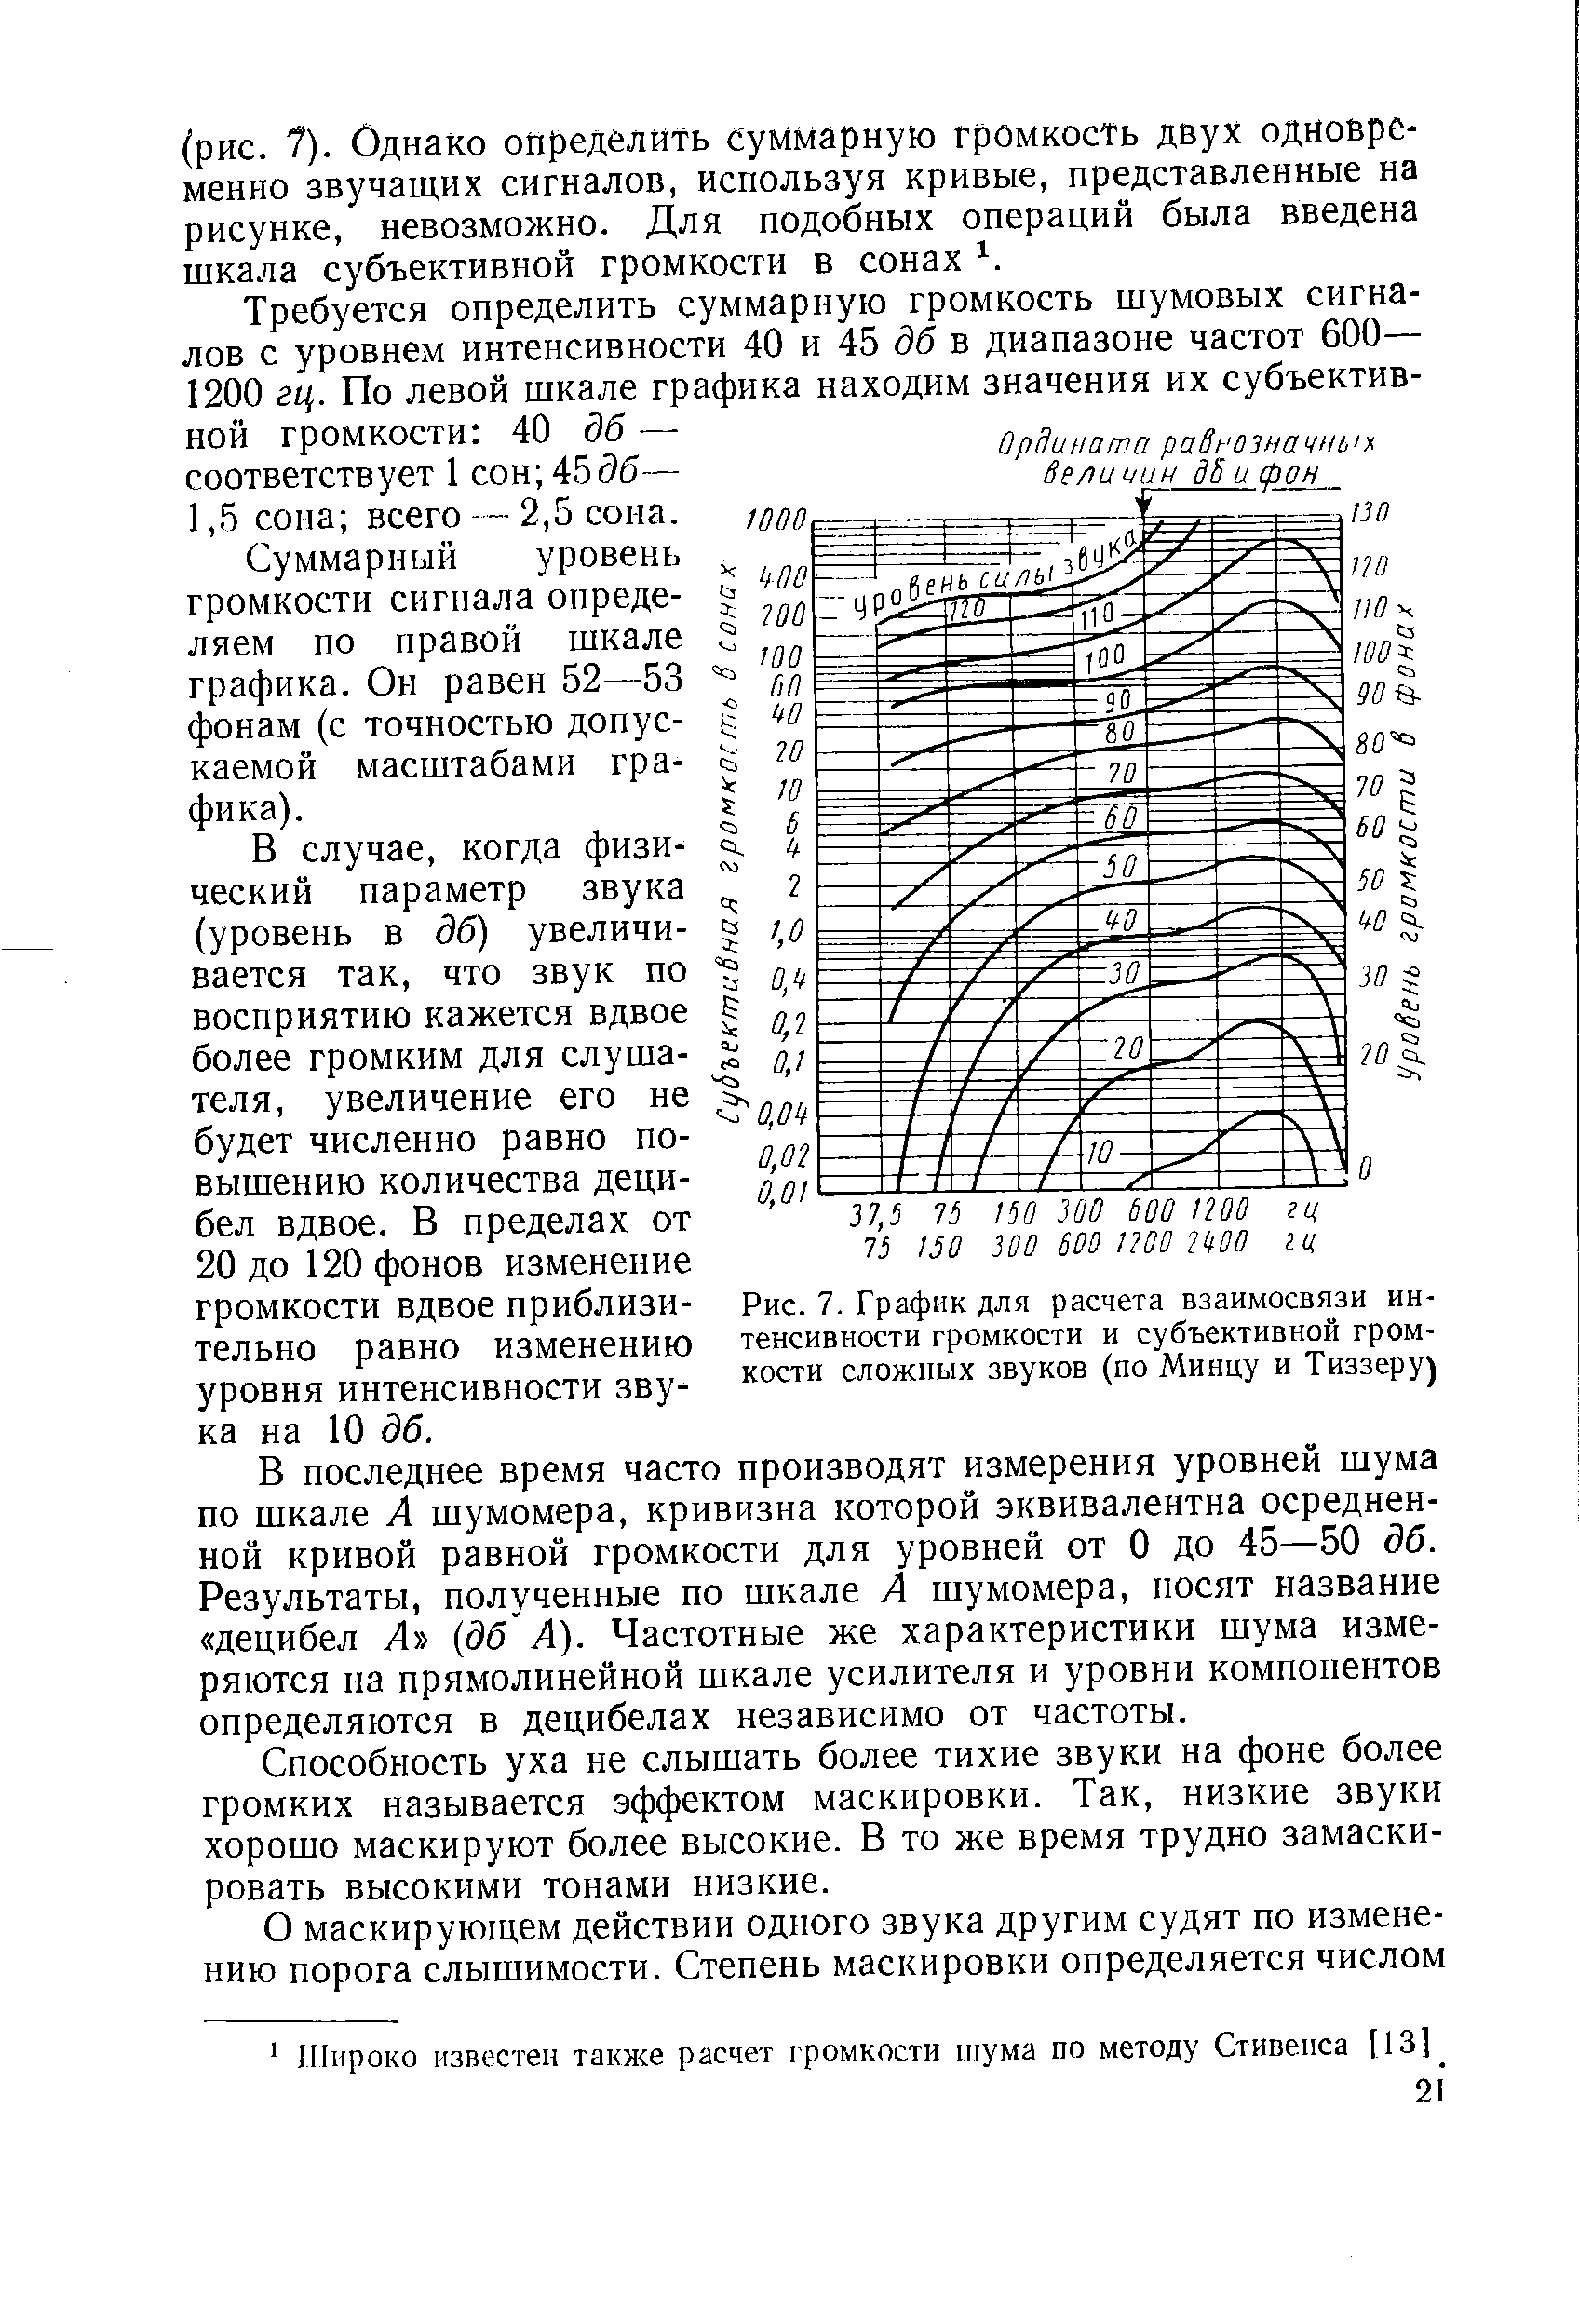 Рис. 7. График для расчета взаимосвязи интенсивности громкости и субъективной громкости сложных звуков (по Минцу и Тиззеру)
